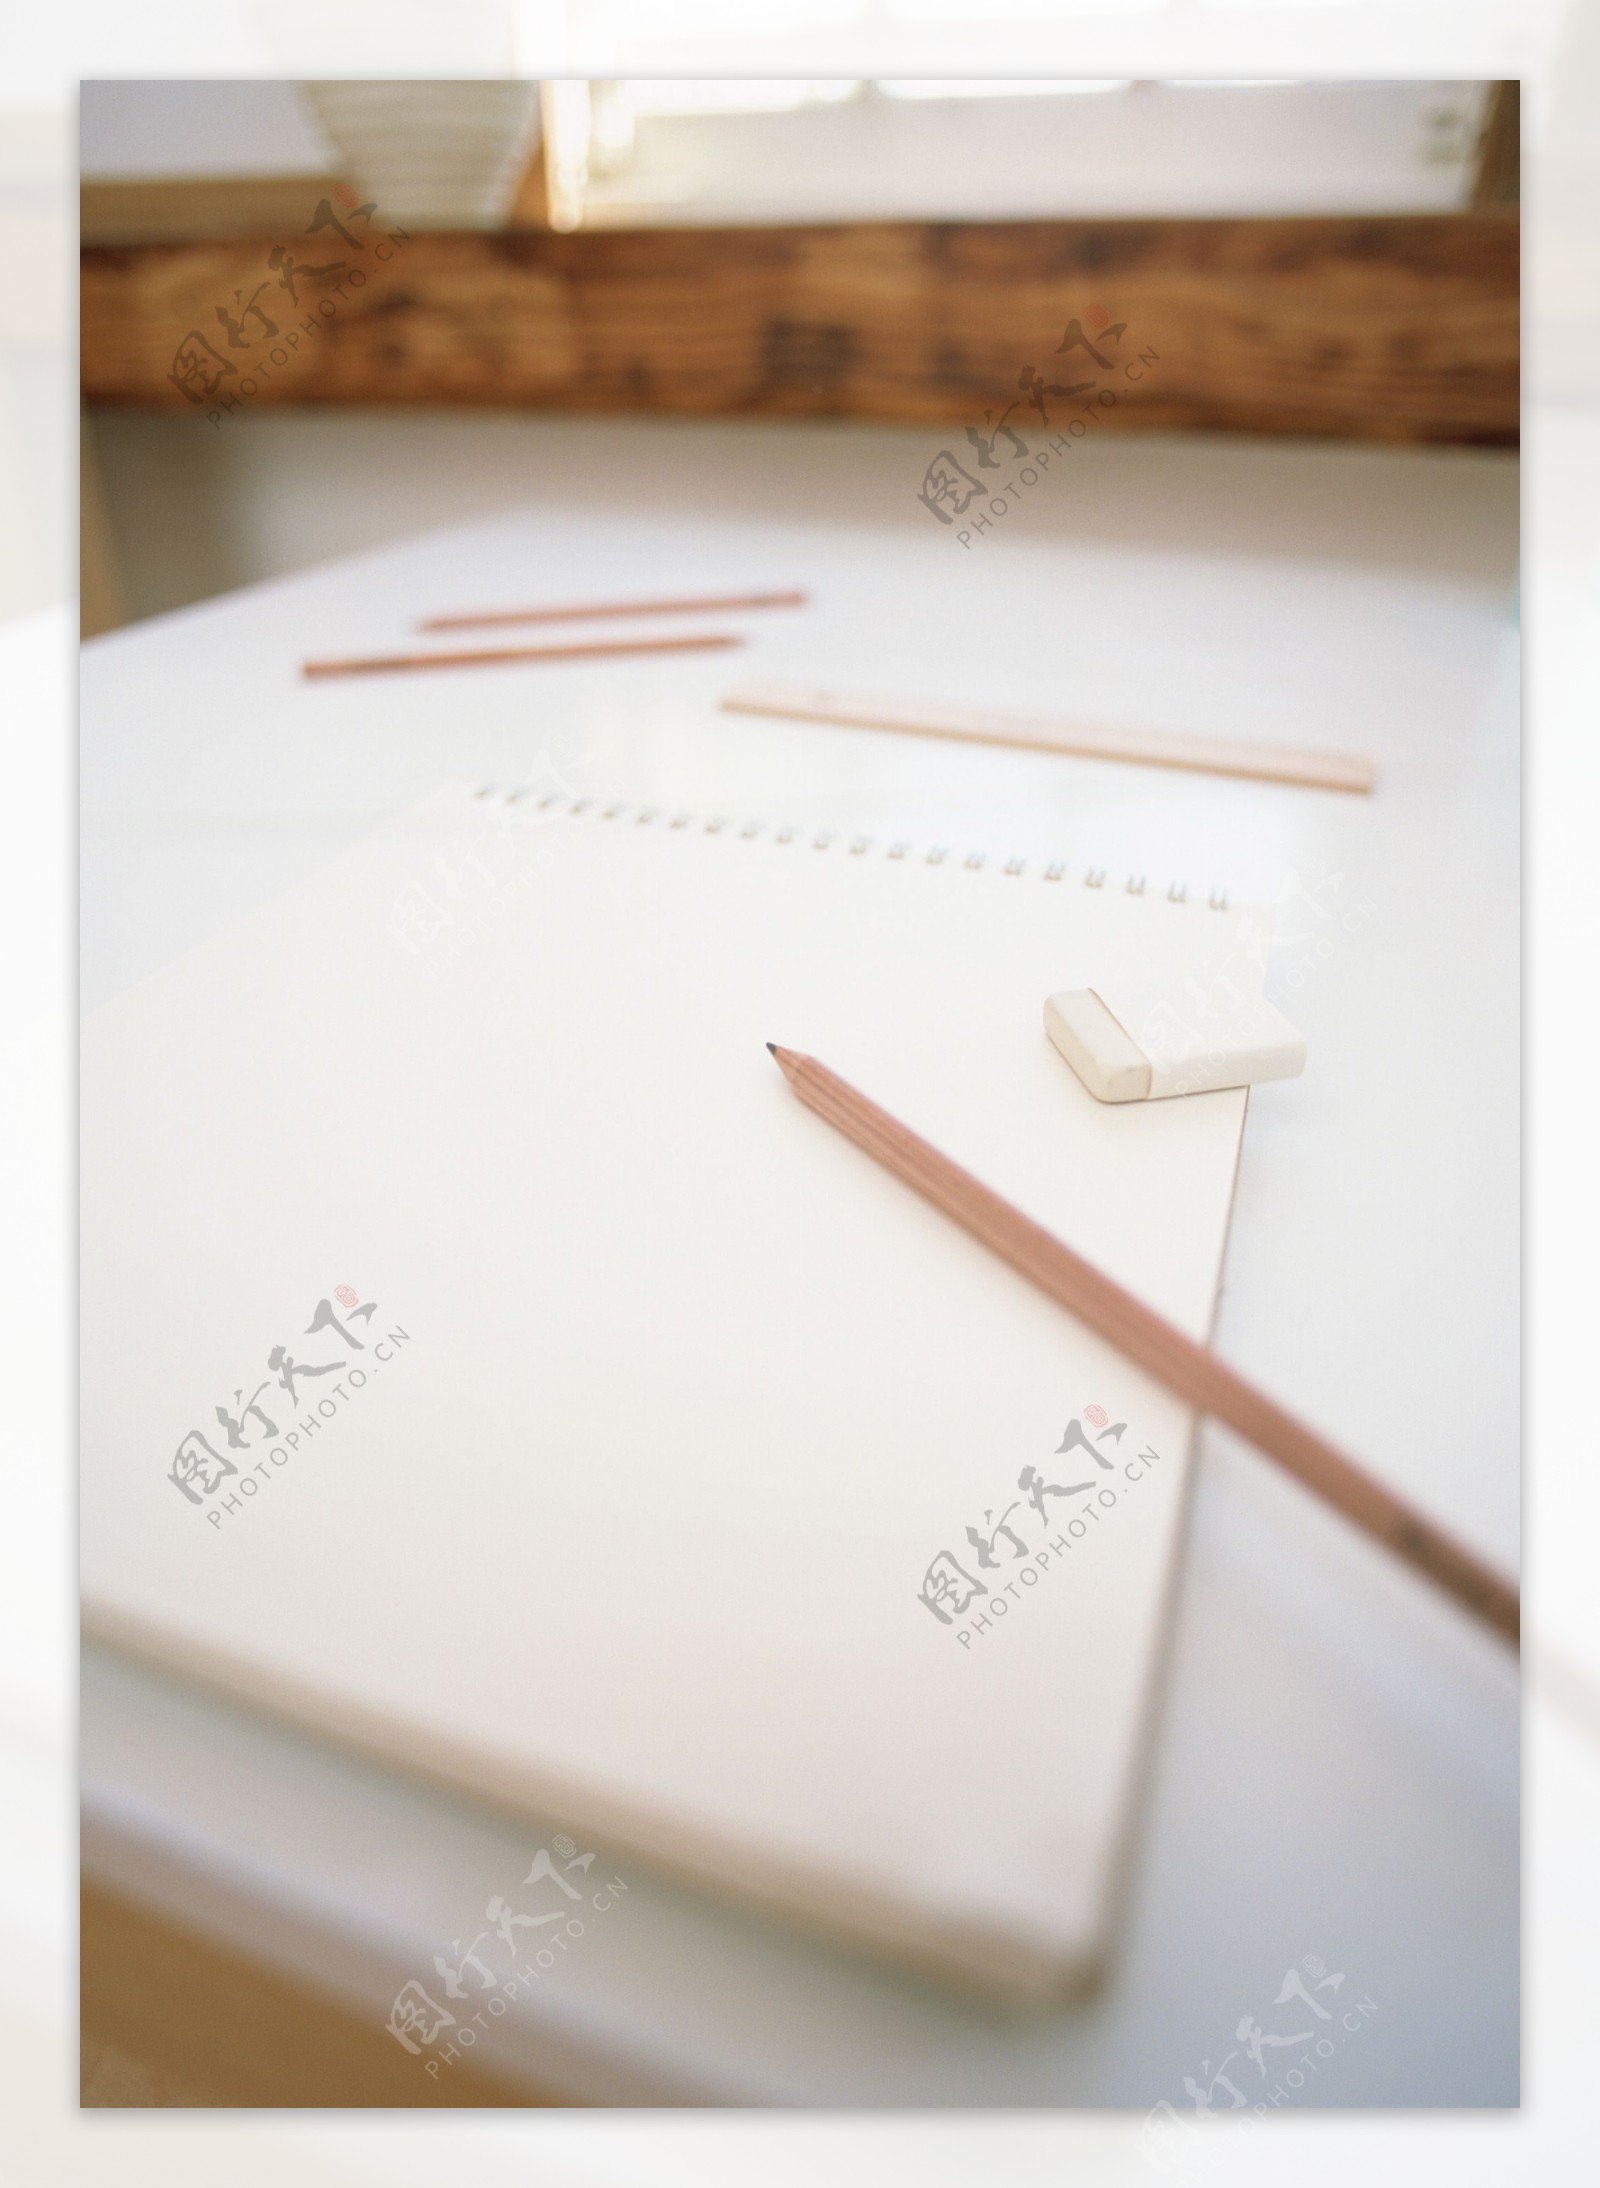 橡皮铅笔作业本图片